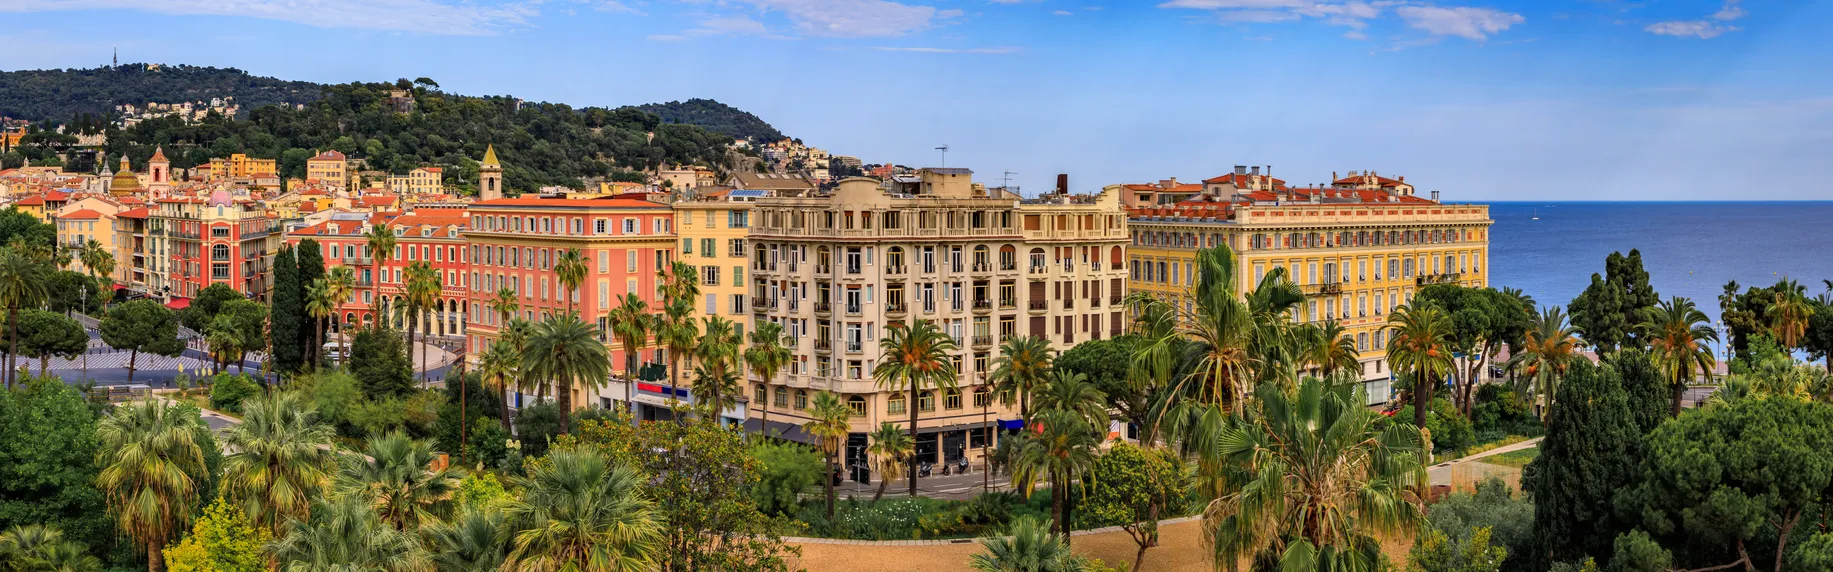 Vue du Jardin Albert 1er, de la vieille ville et de la mer Méditerranée à Nice, Côte d'Azur  © iStock / SvetlanaSF